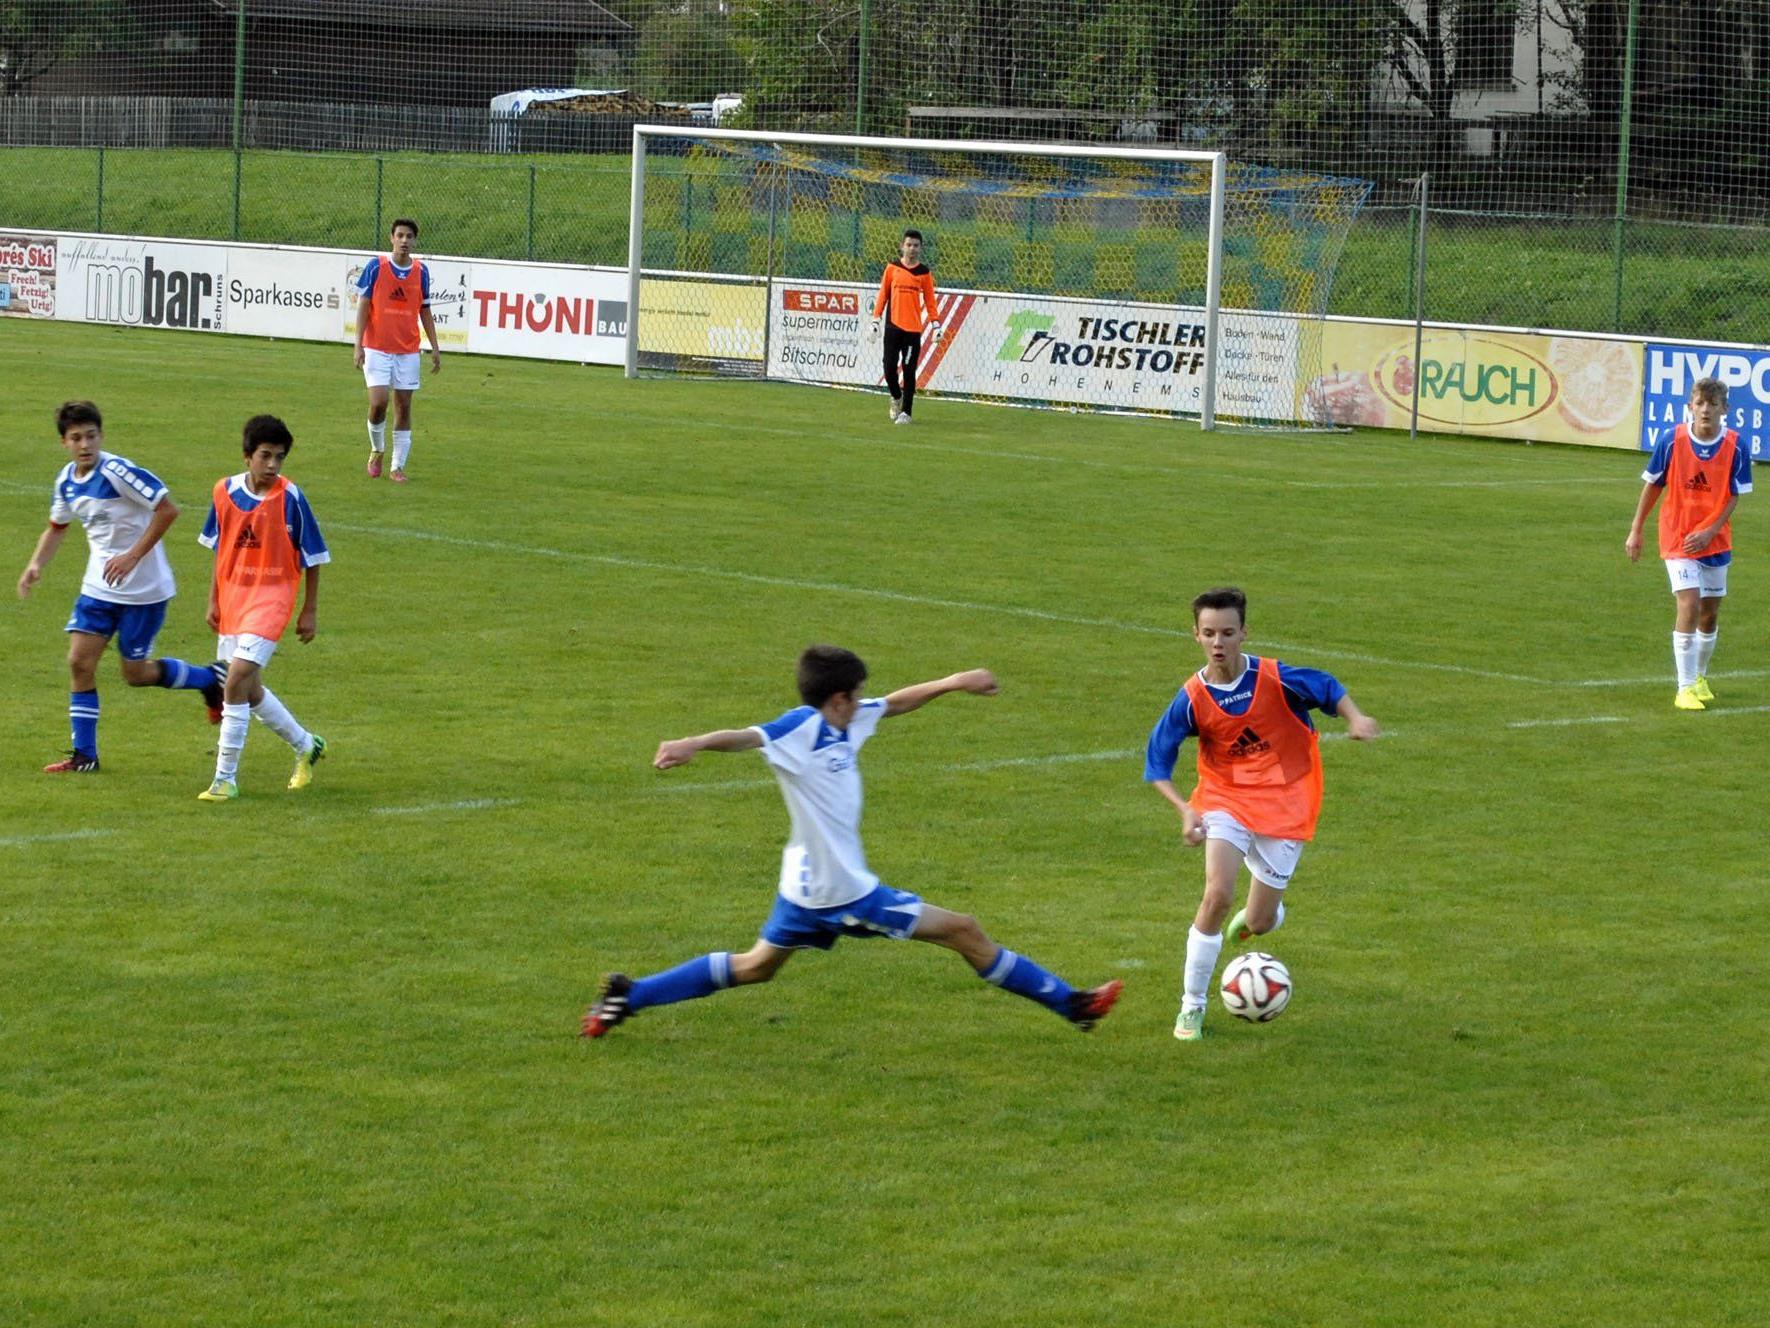 U16-Spiel Montafon - Feldkirch auf der Sportanlage Wagenweg im Aktivpark Montafon, Schruns